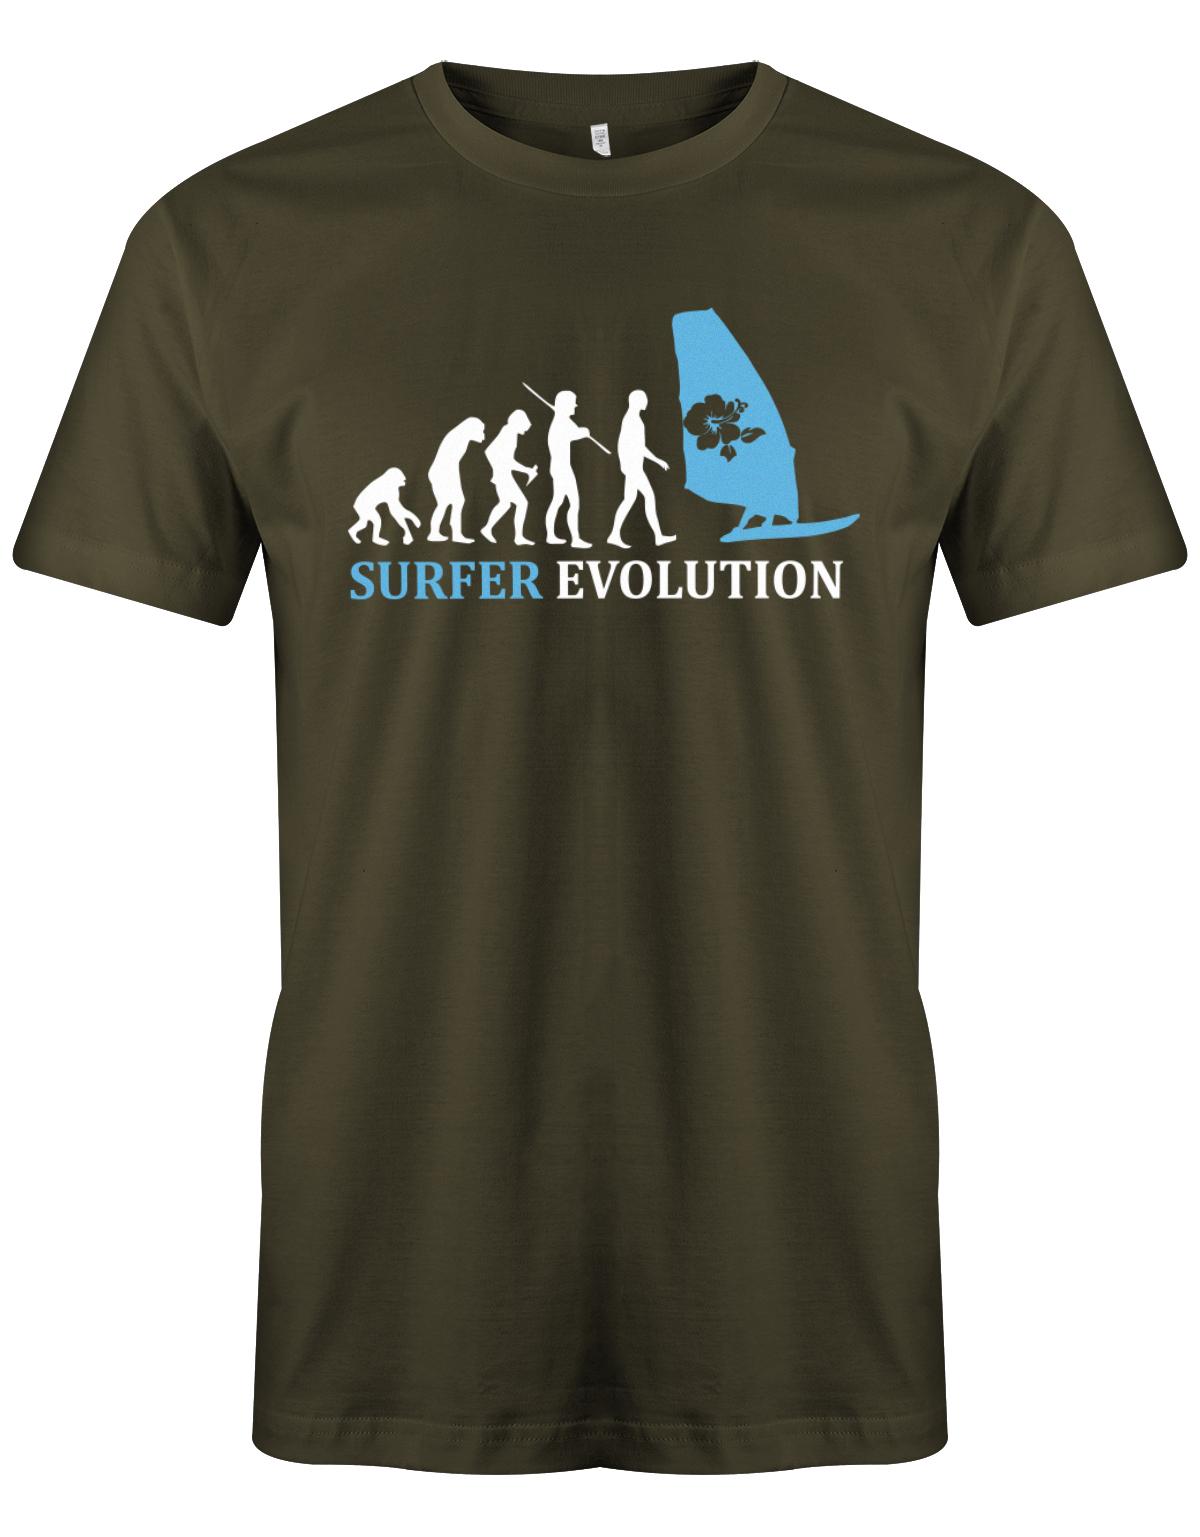 Surfer-Evolution-Surf-Herren-Shirt-Army